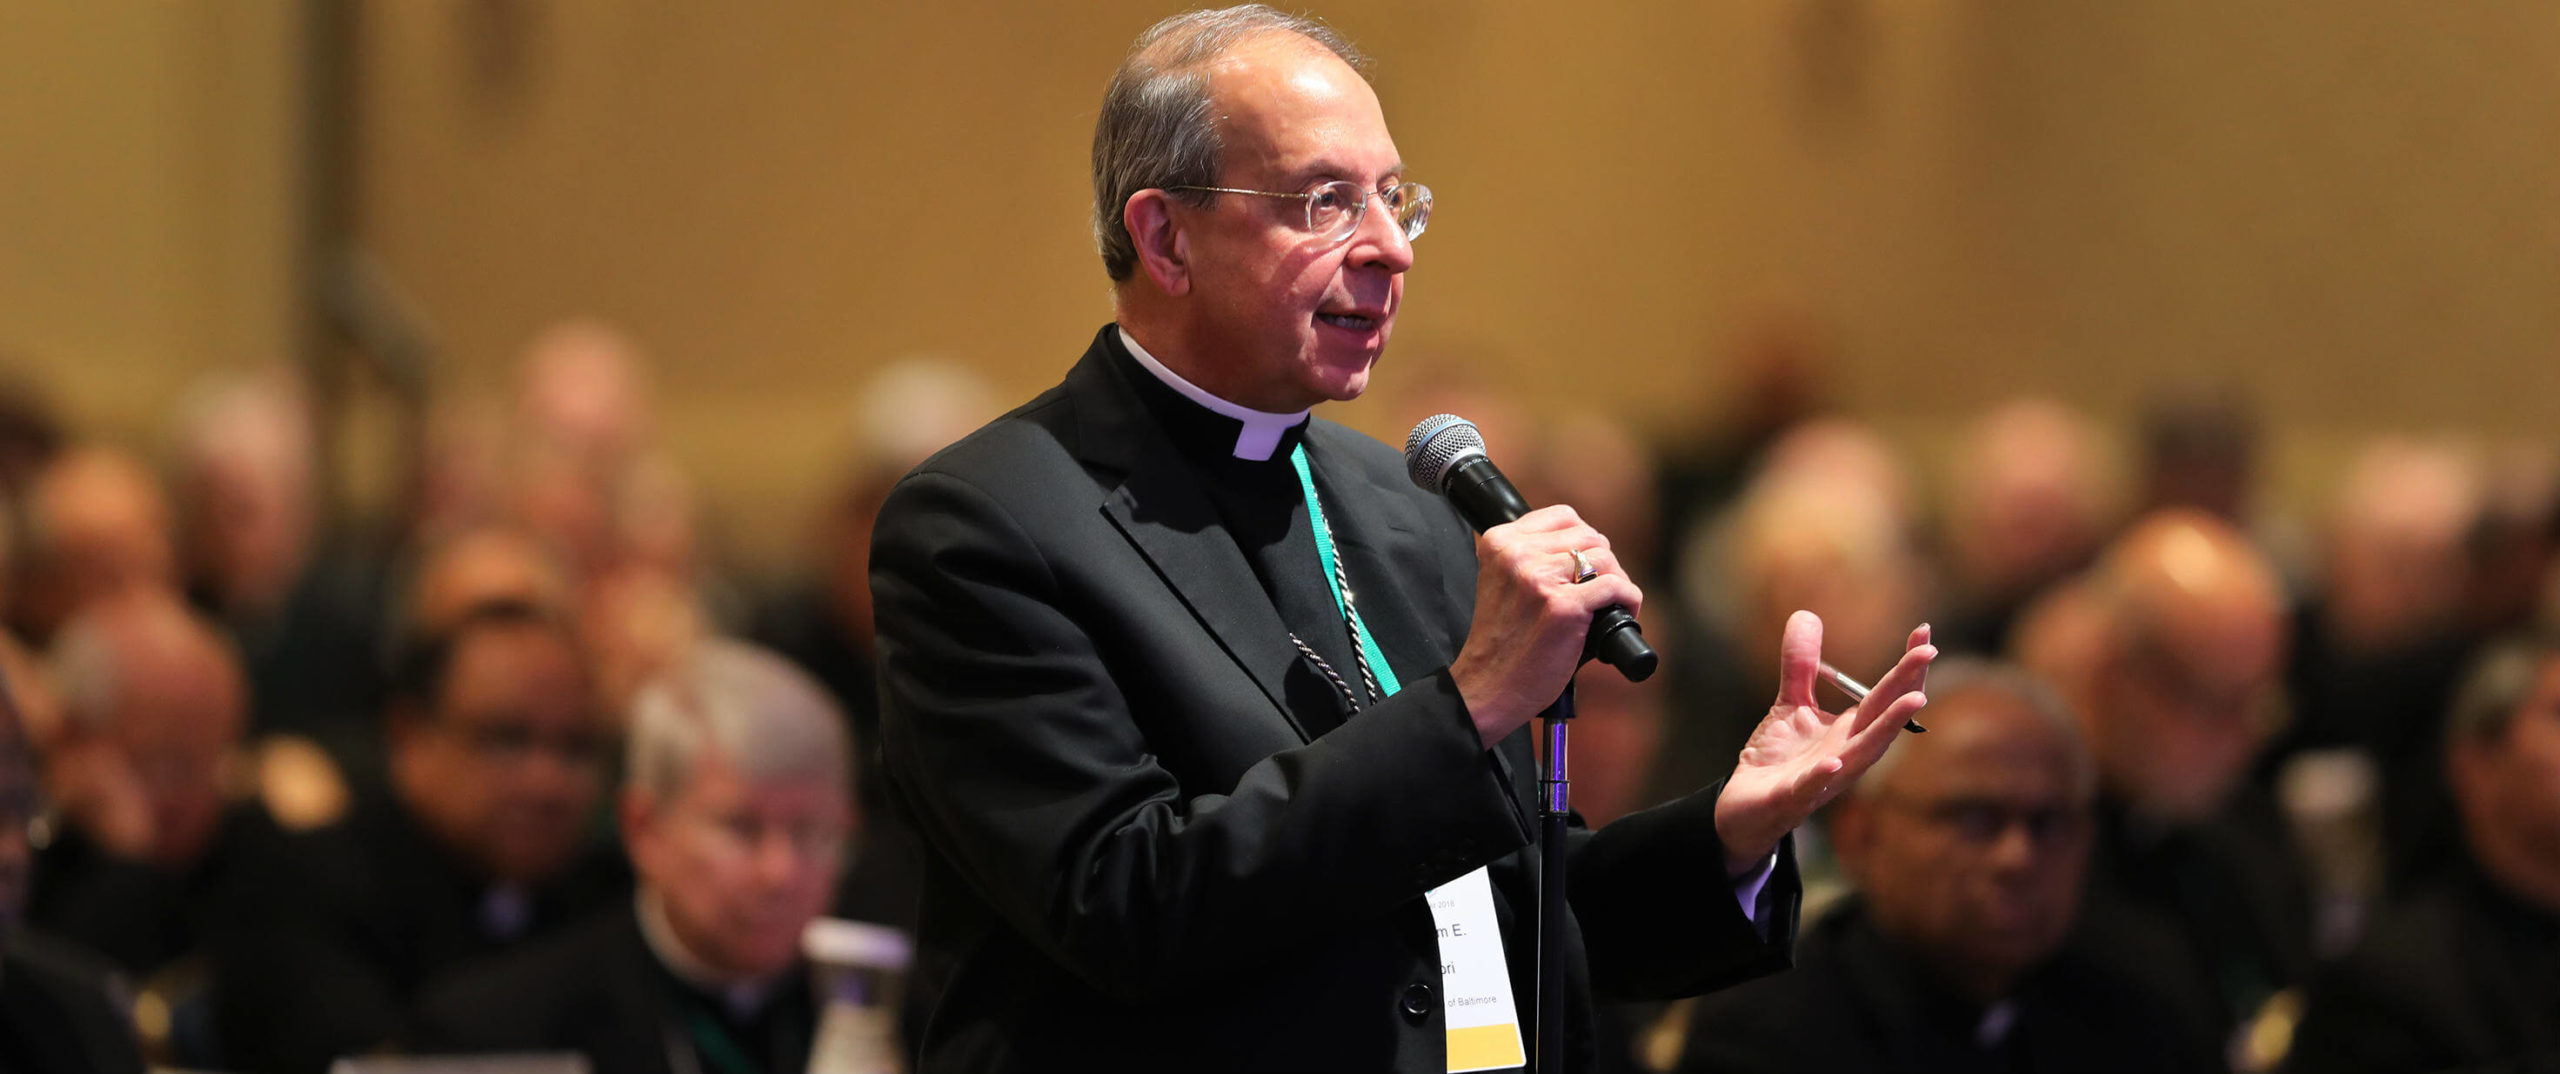 Archbishop Lori adds details on Bishop Bransfield investigation